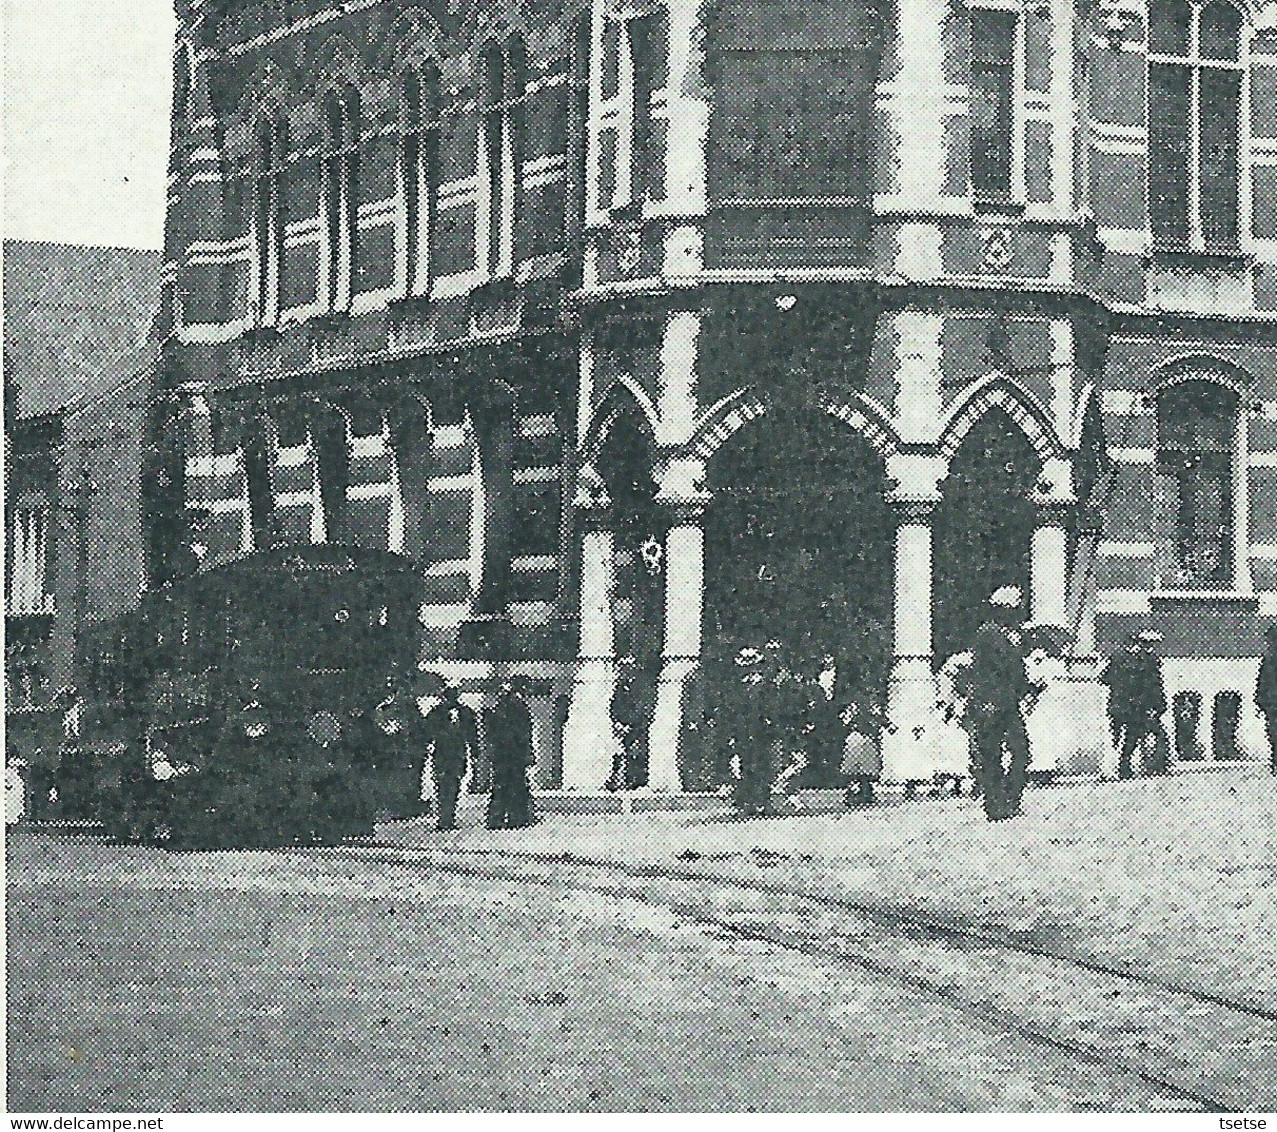 Mariemont - Hôtel De Ville - TRAM - 1903  ( Voir Verso ) - Morlanwelz